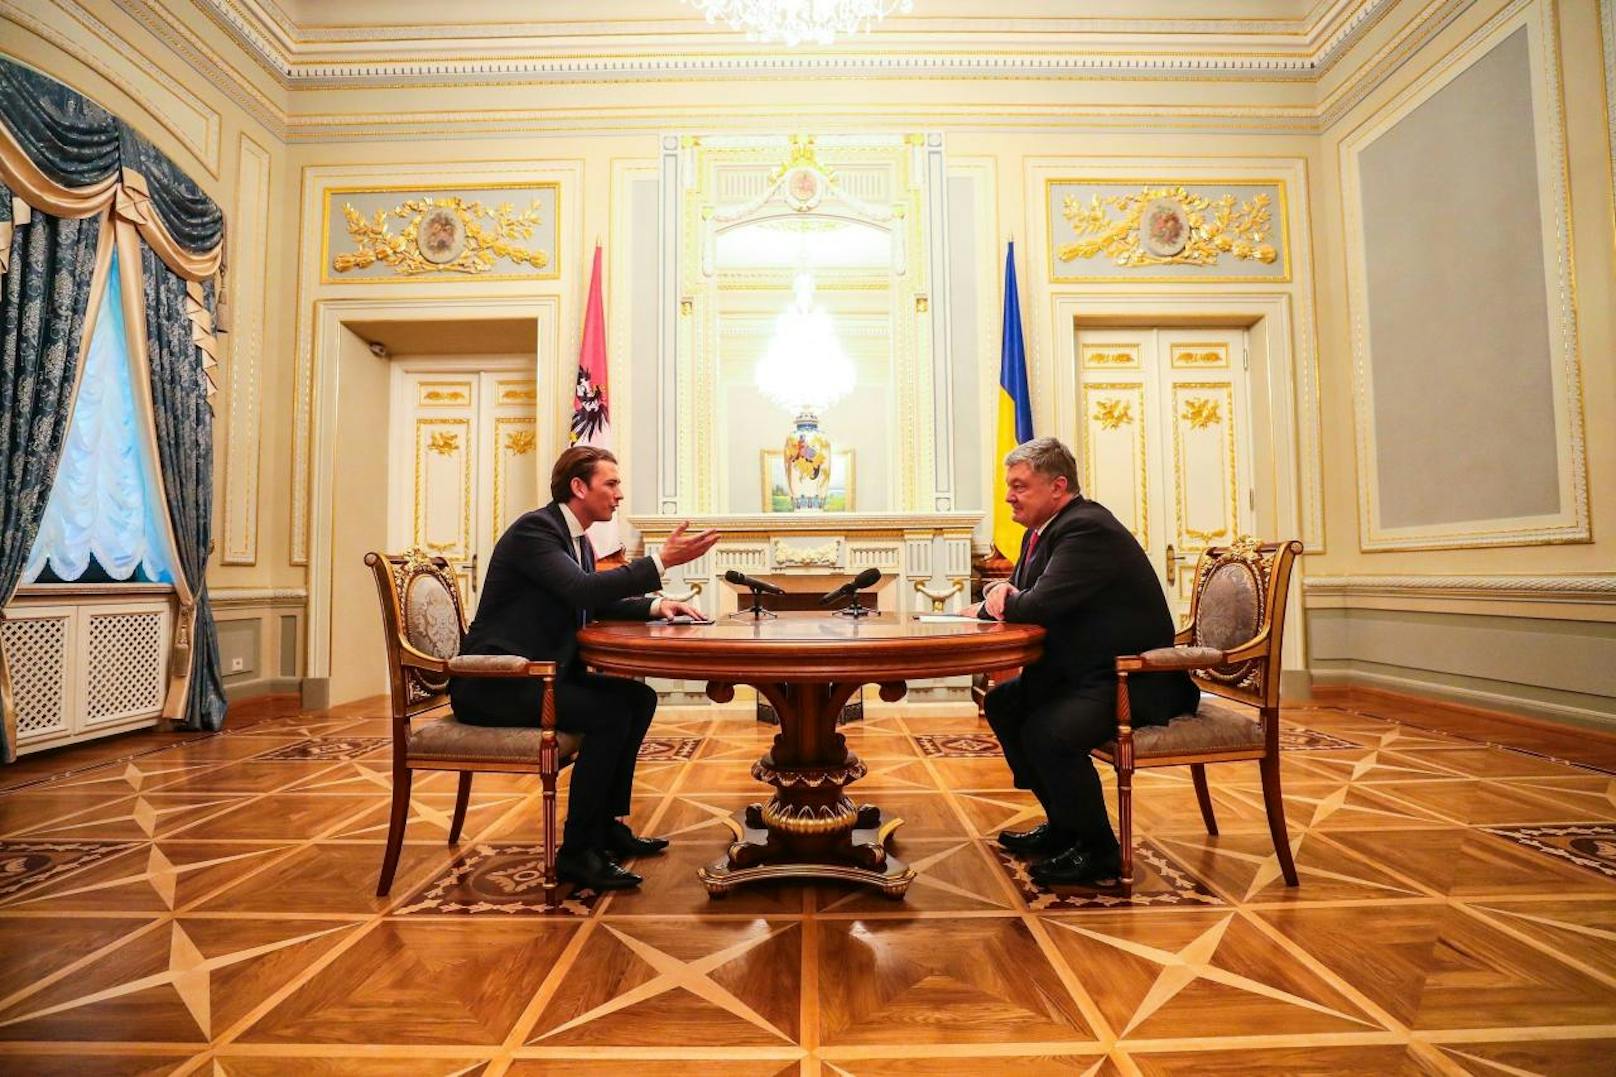 Bundeskanzler Sebastian Kurz (li.) im Gespräch mit dem Präsidenten der Ukraine, Petro Poroschenko (re.).